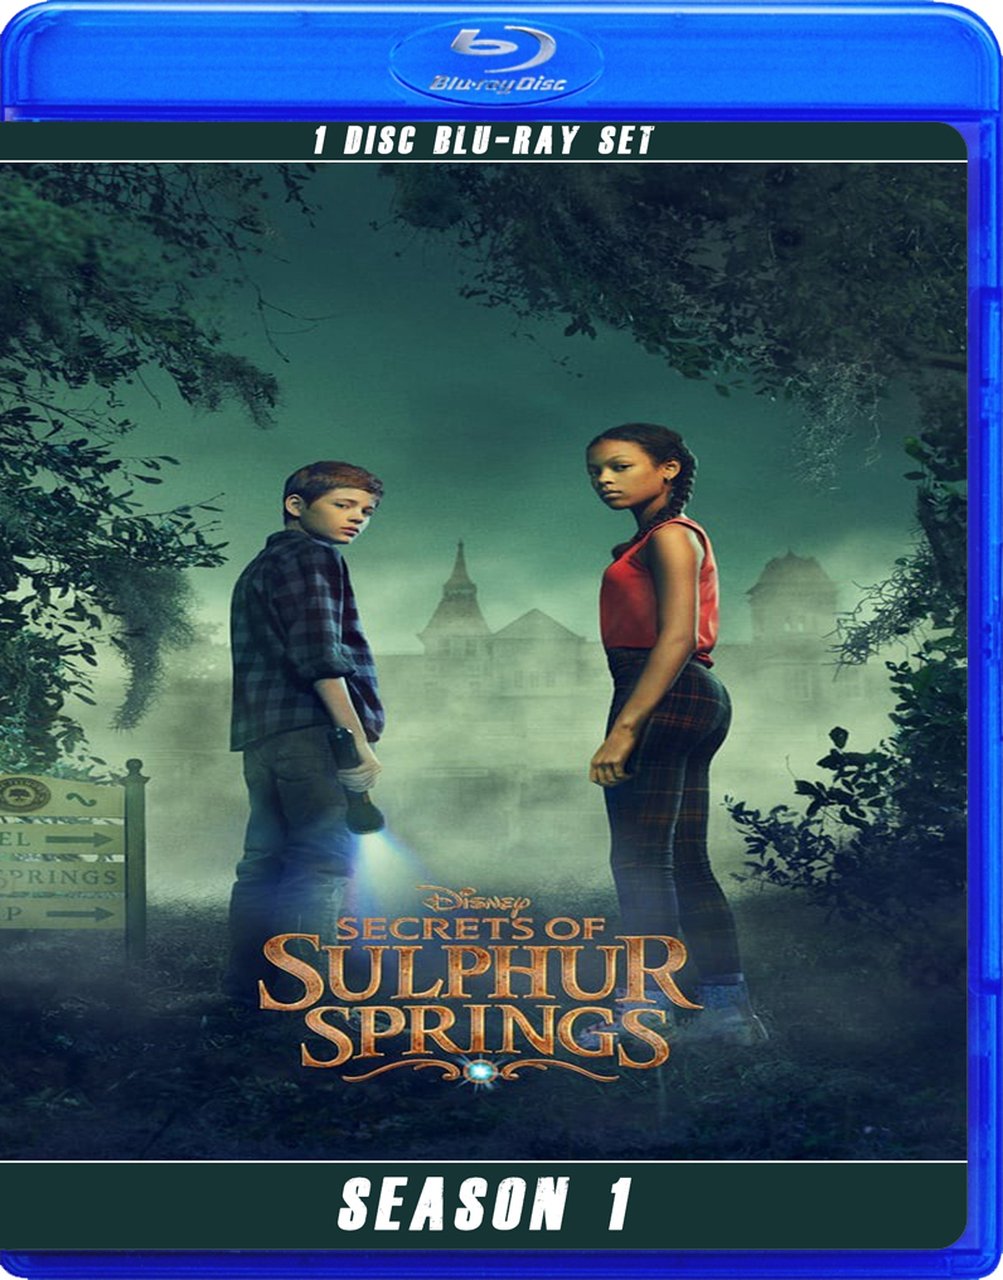 secrets of sulphur springs season 2 premiere